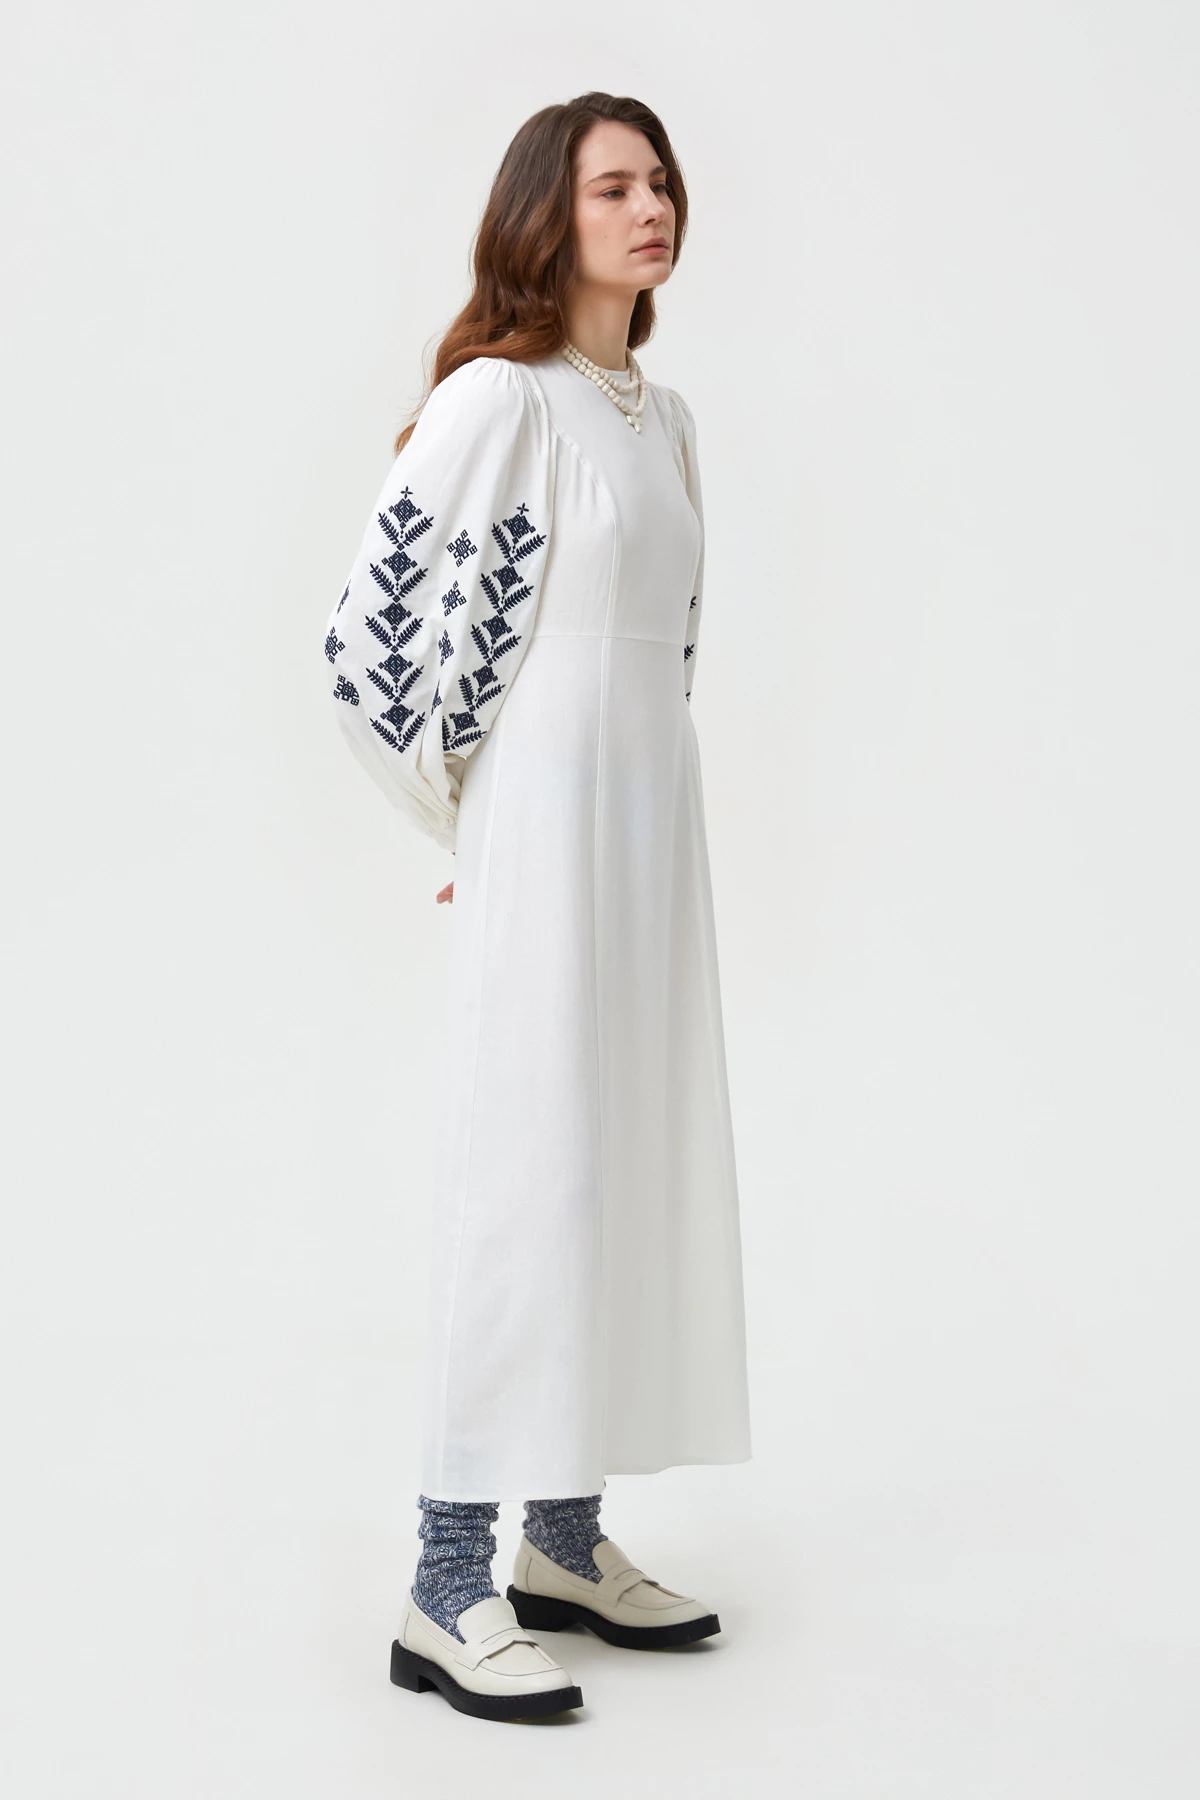 Молочна вишита сукня в орнамент ромби з льоном, фото 1